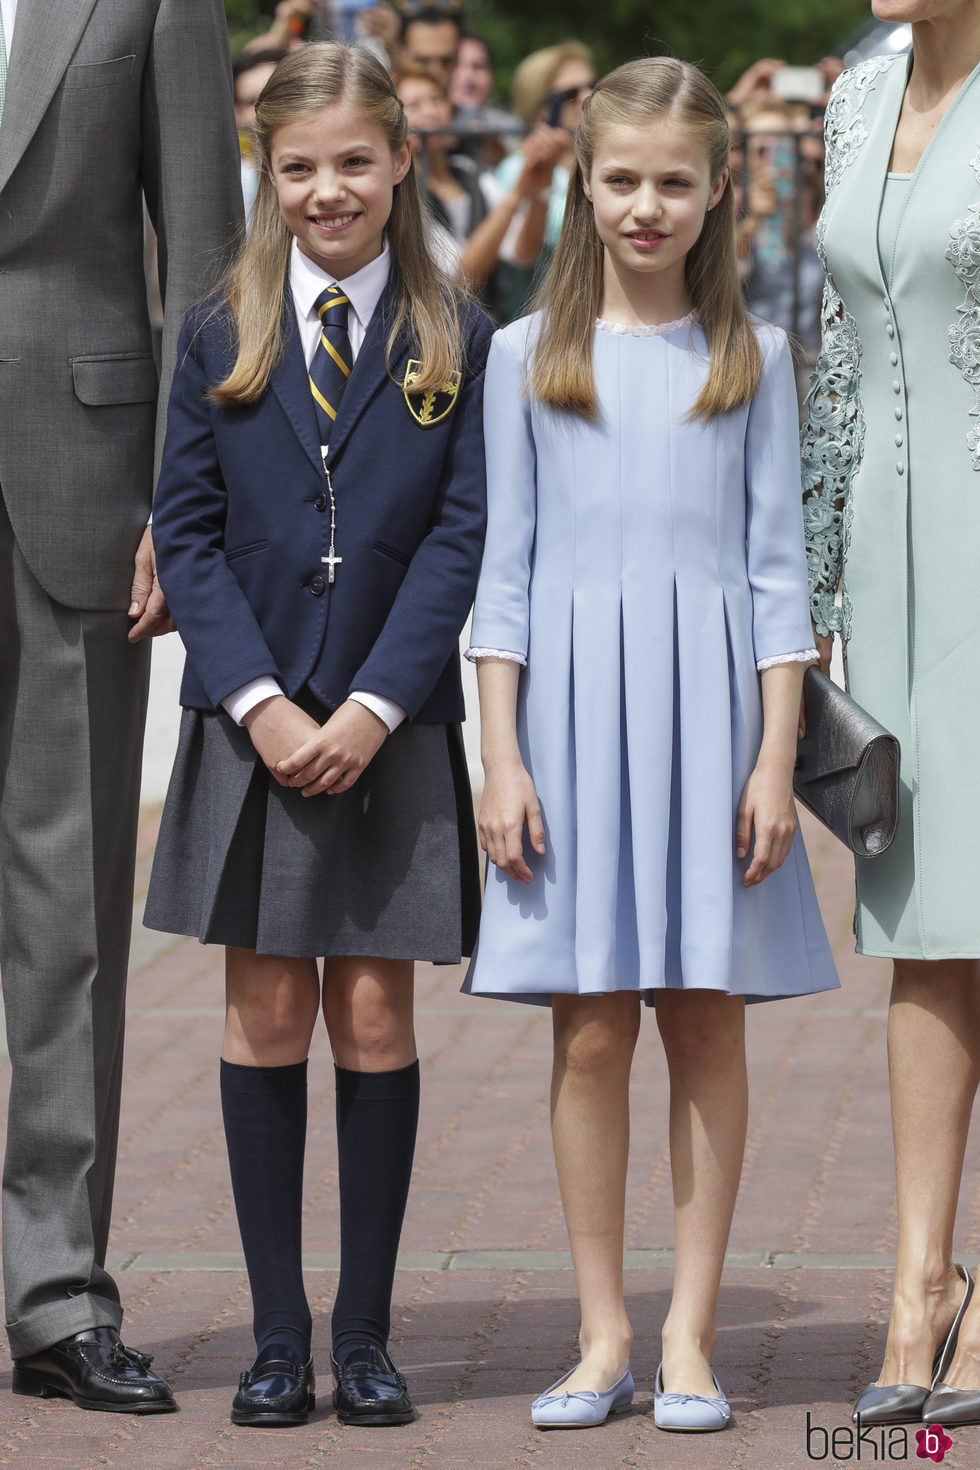 La Infanta Sofía el día de su Comunión junto a su hermana la Princesa Leonor